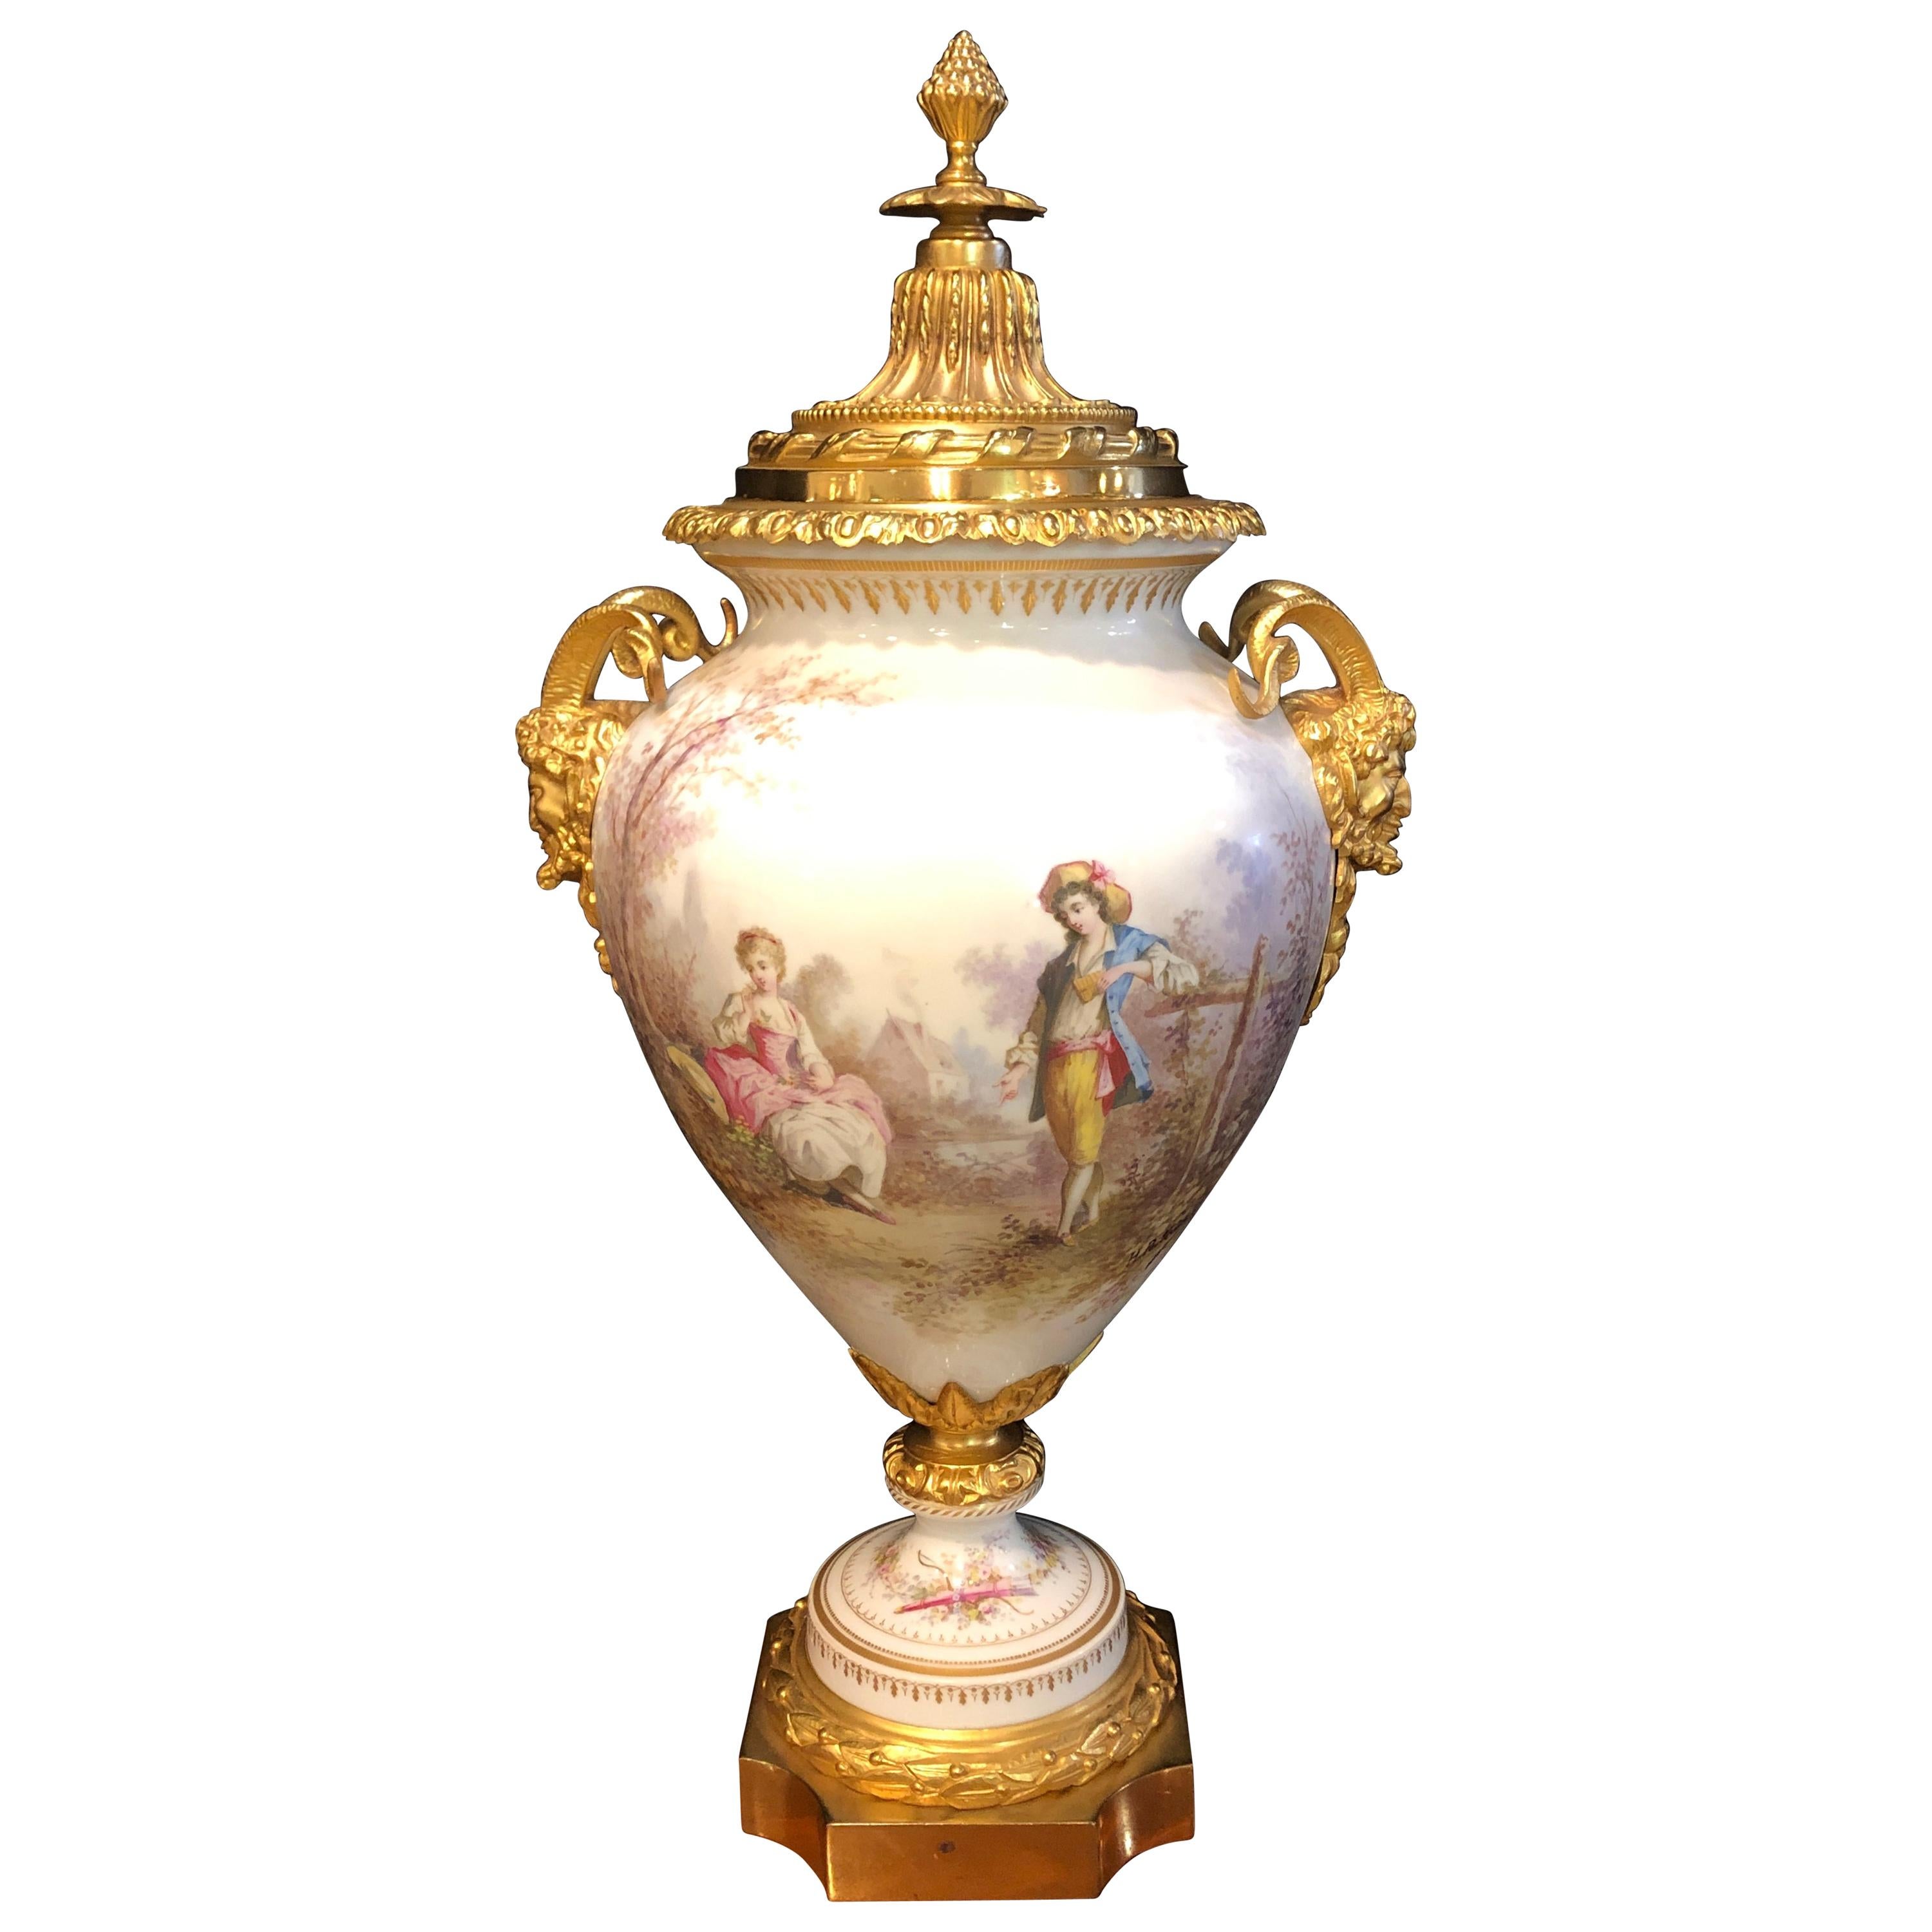 Französisch serviert gemalt Rams Head Bronze montiert Deckel Vase, Tafelaufsatz oder Urne